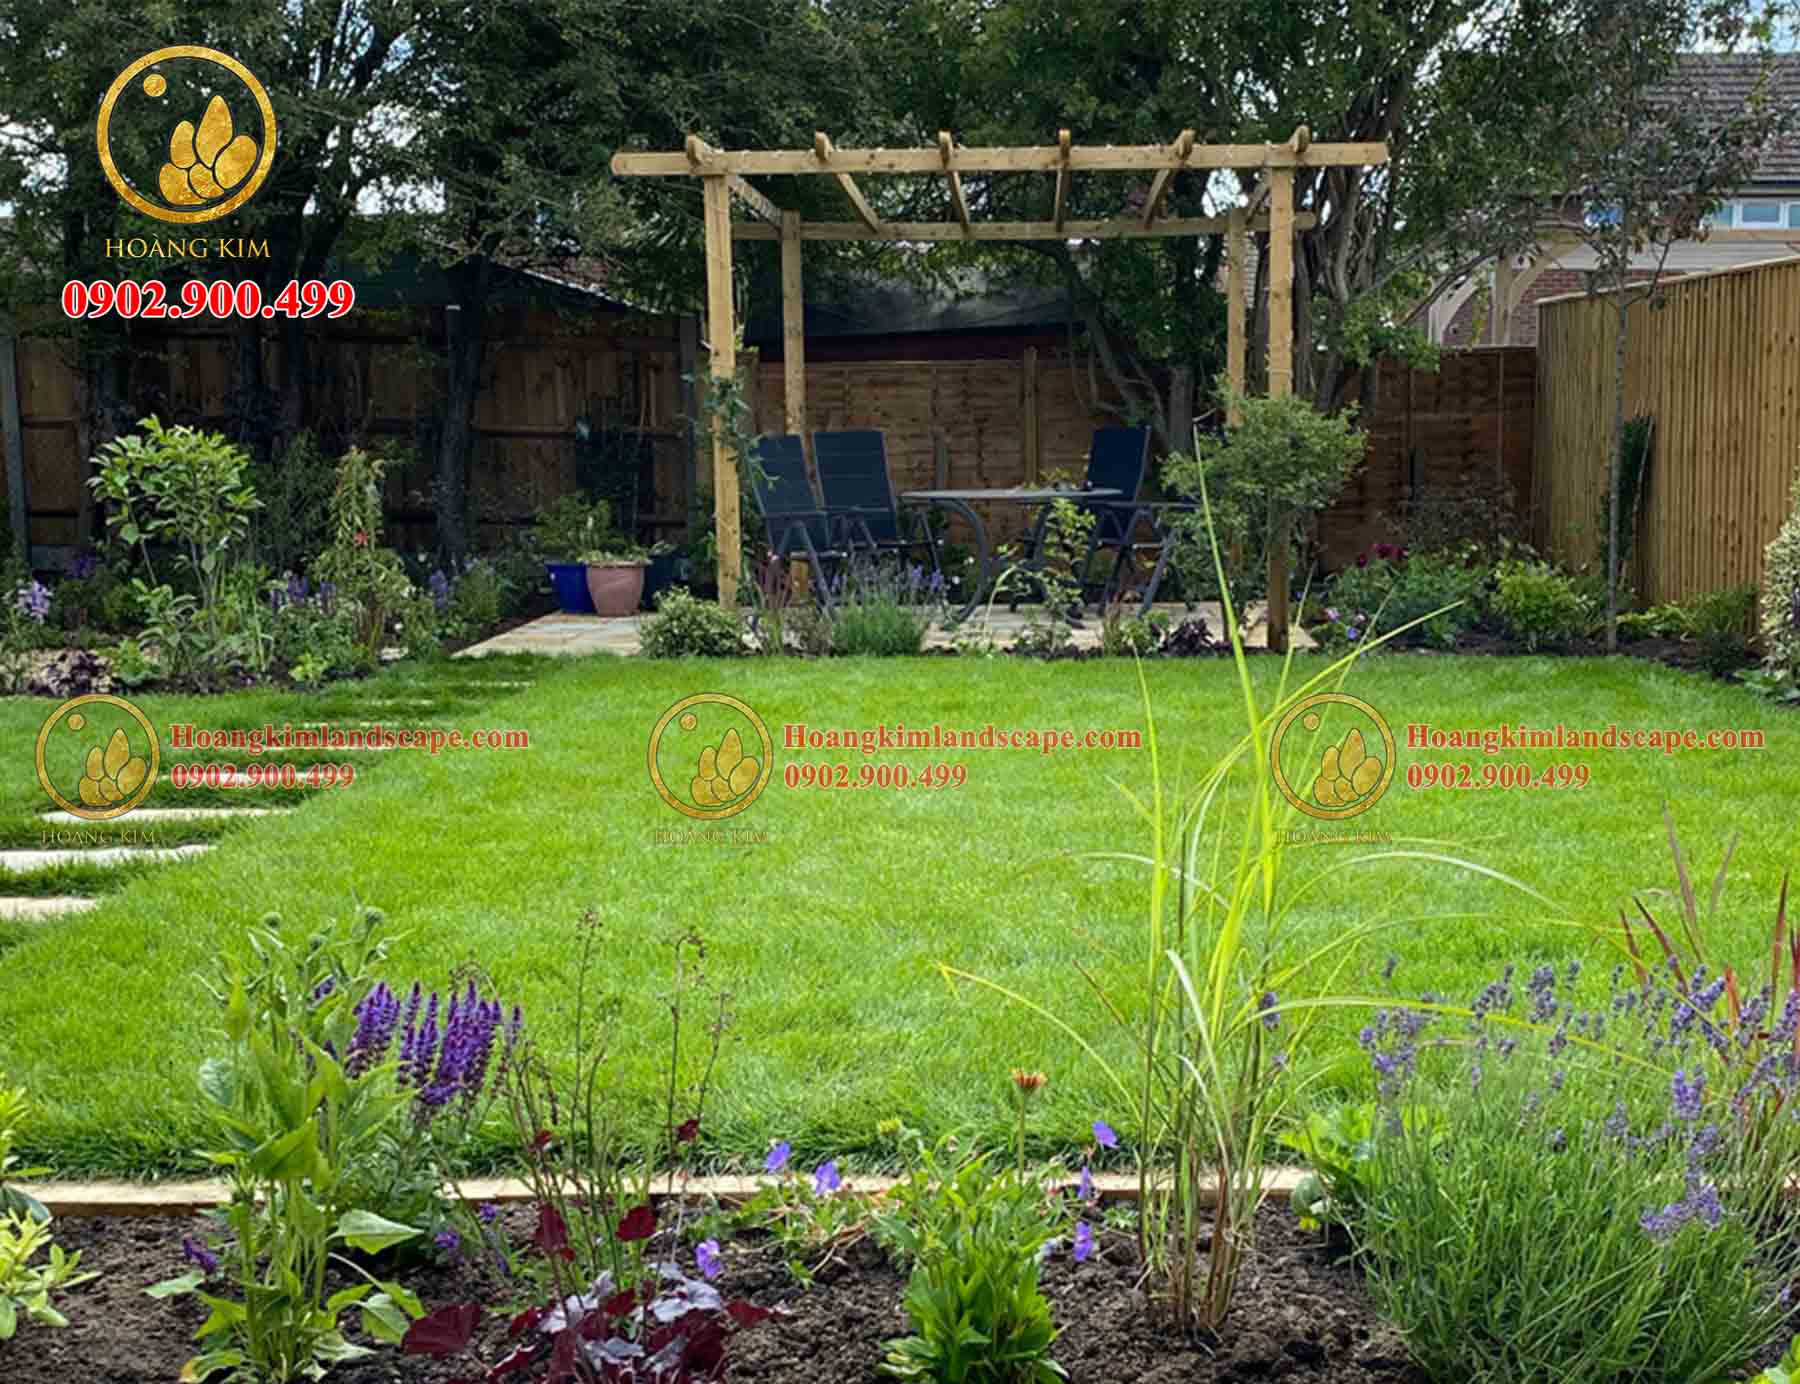 Trồng cỏ giúp giữ ẩm cho đất, chống trôi chất dinh dưỡng và xói mòn